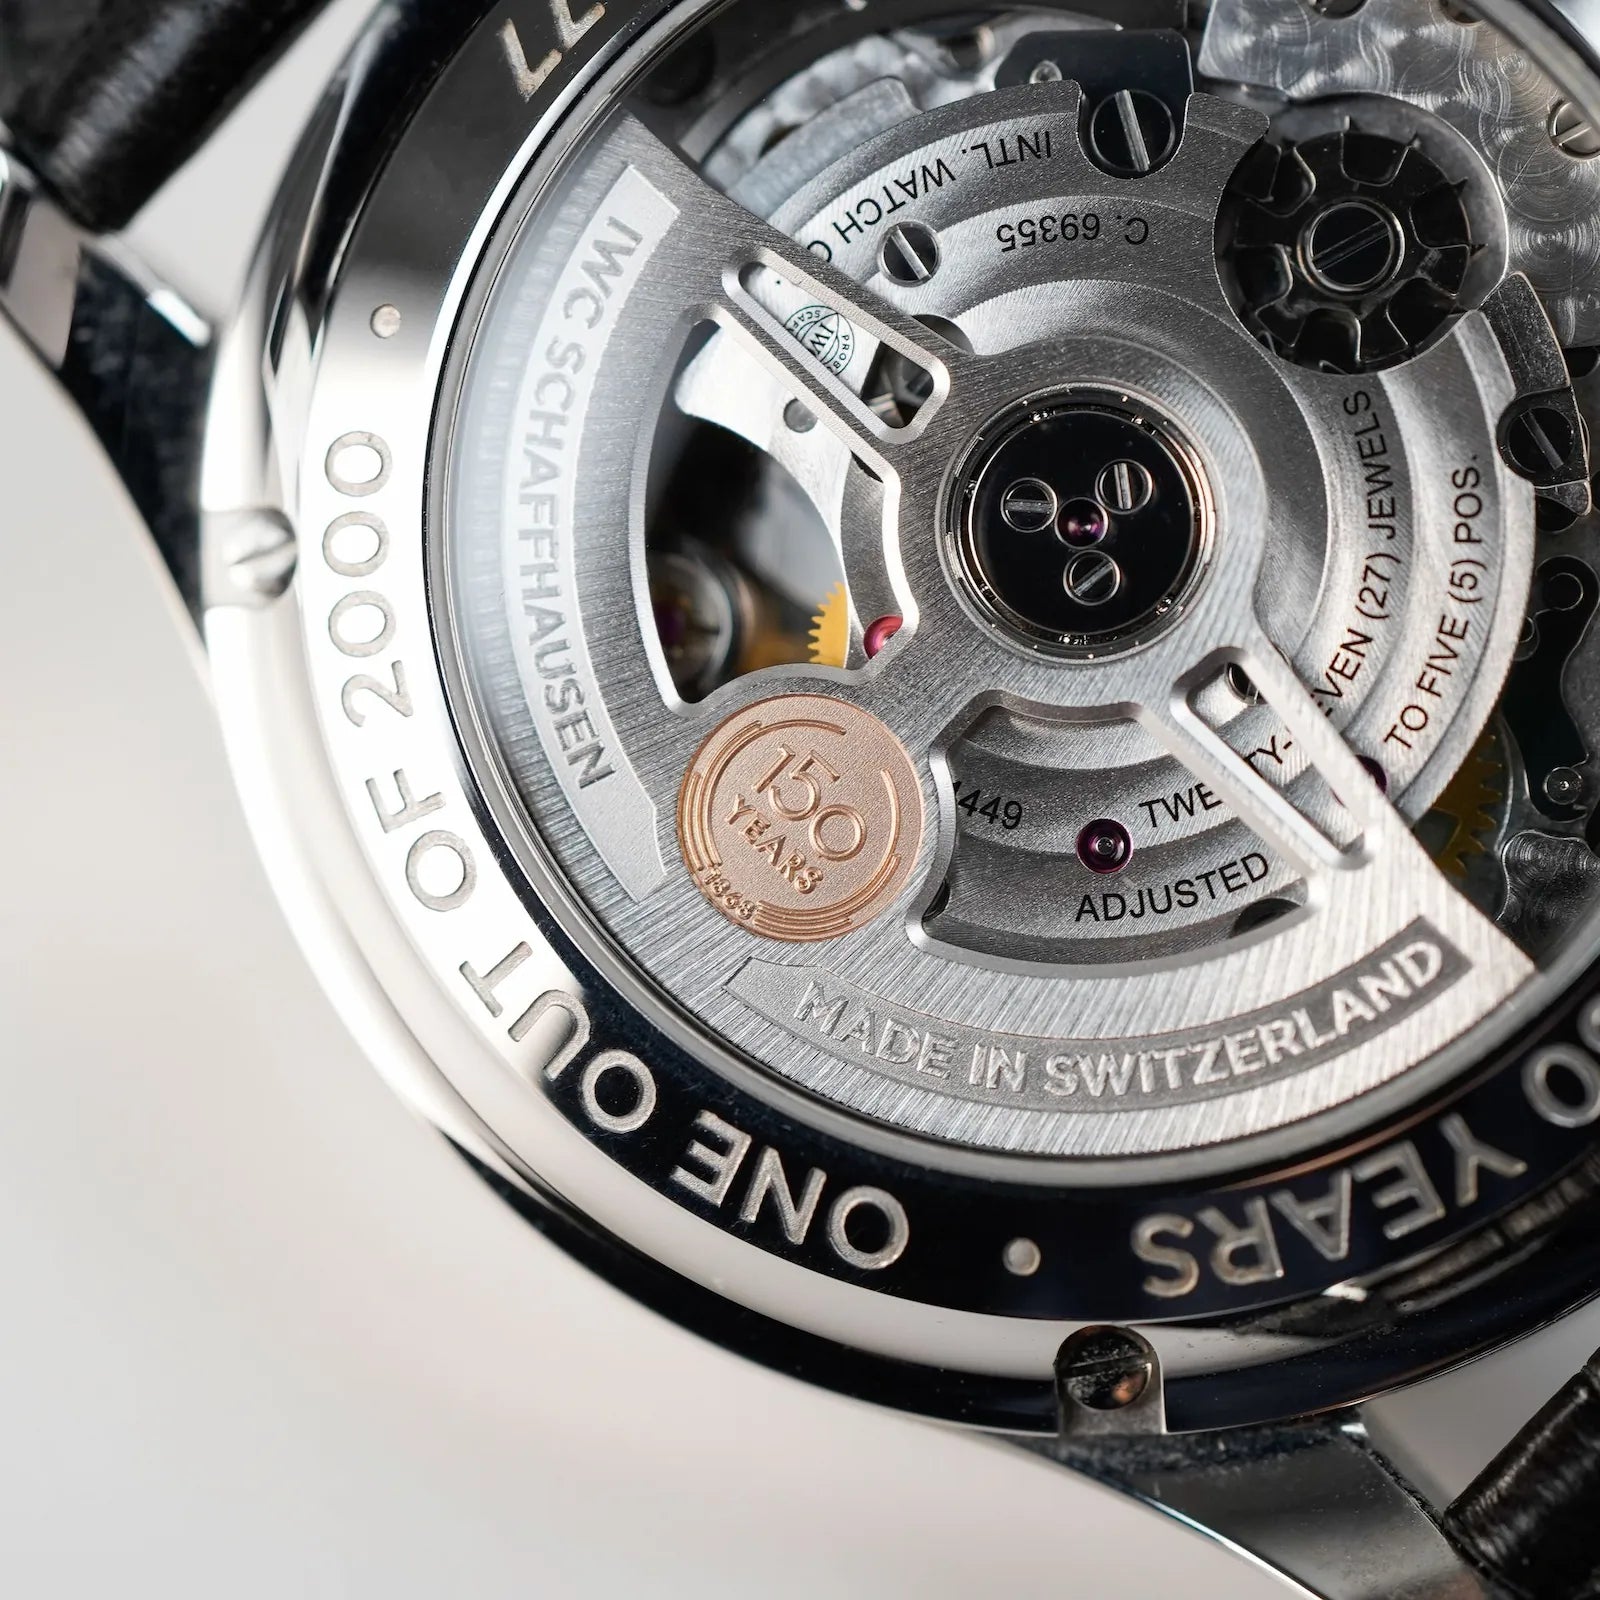 Offener Gehäuseboden einer IWC Armbanduhr mit Glasboden und Blick auf das automatische Uhrwerk